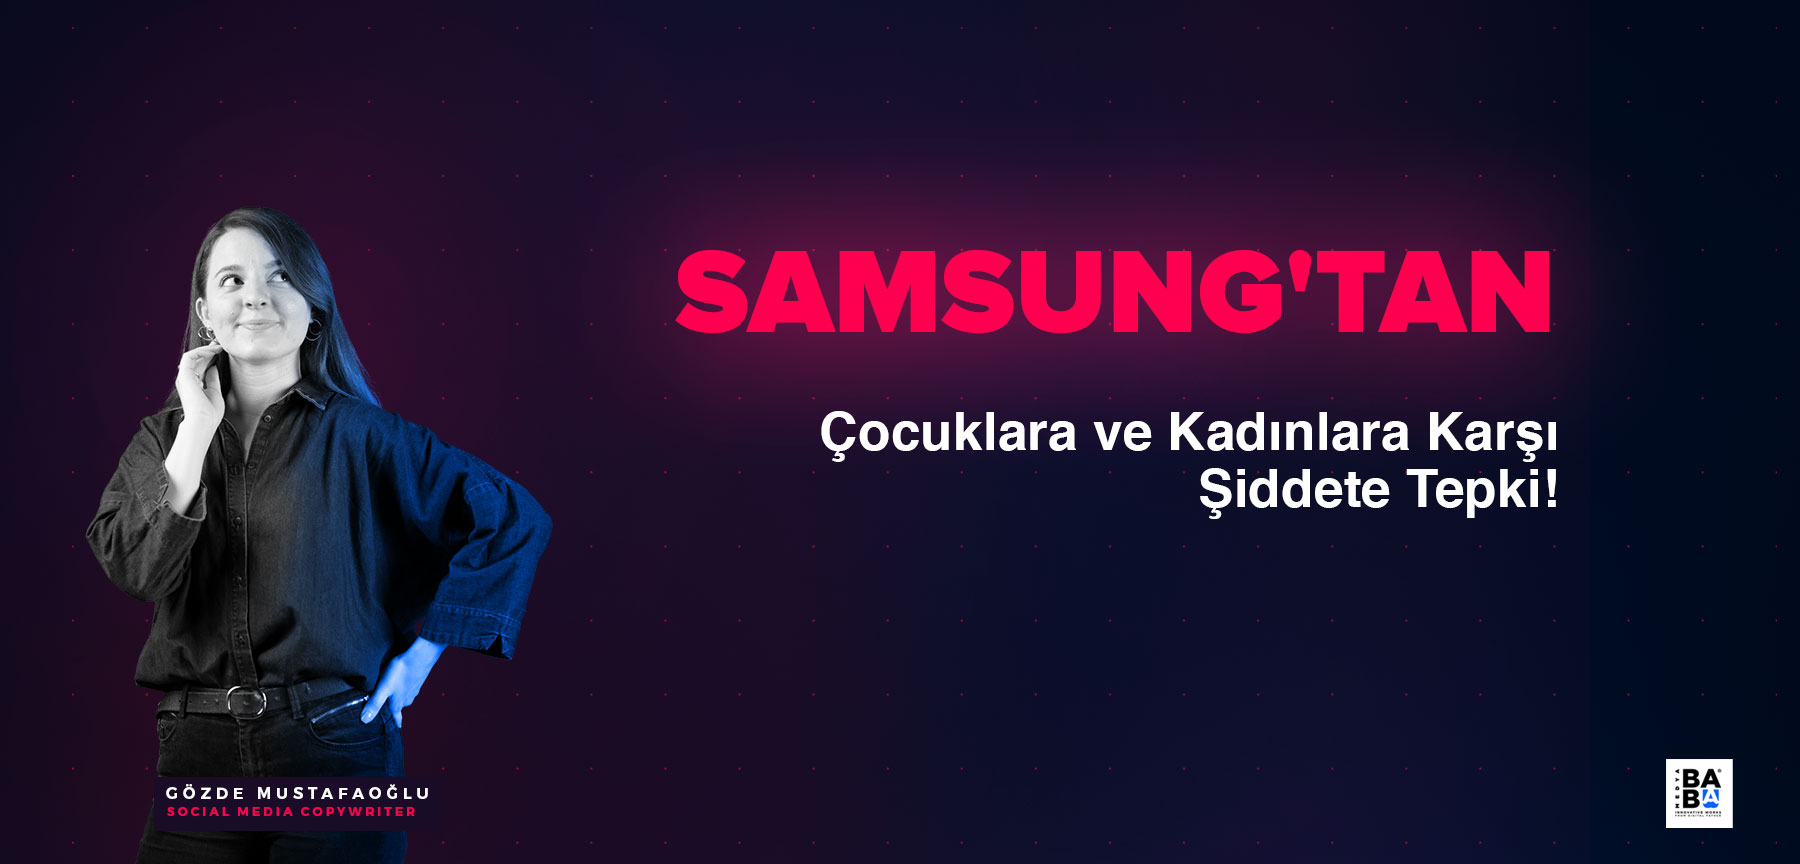 Samsung'tan çocuklara ve kadınlara karşı şiddete tepki!